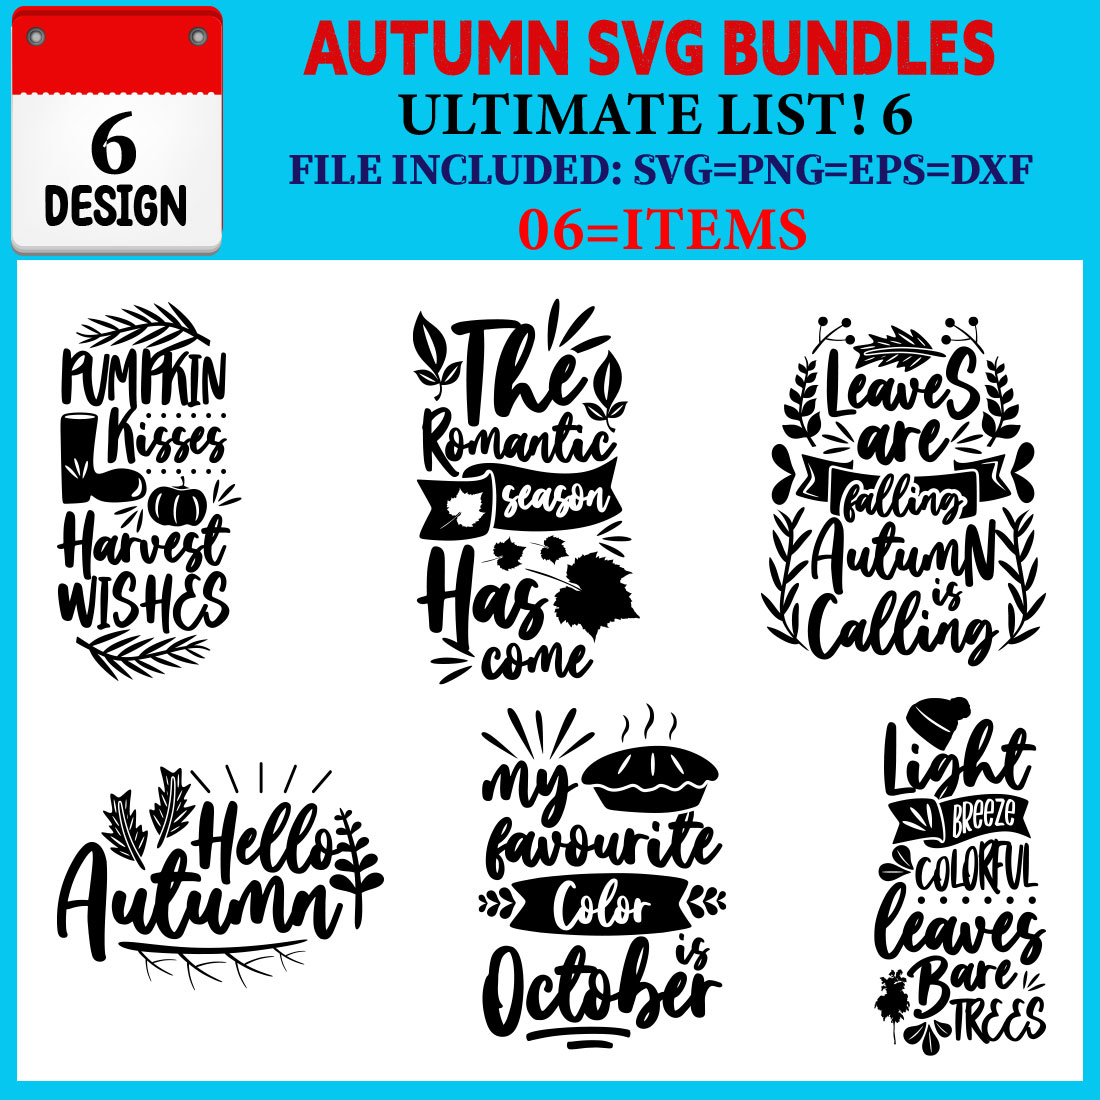 Autumn T-shirt Design Bundle Vol-04 cover image.